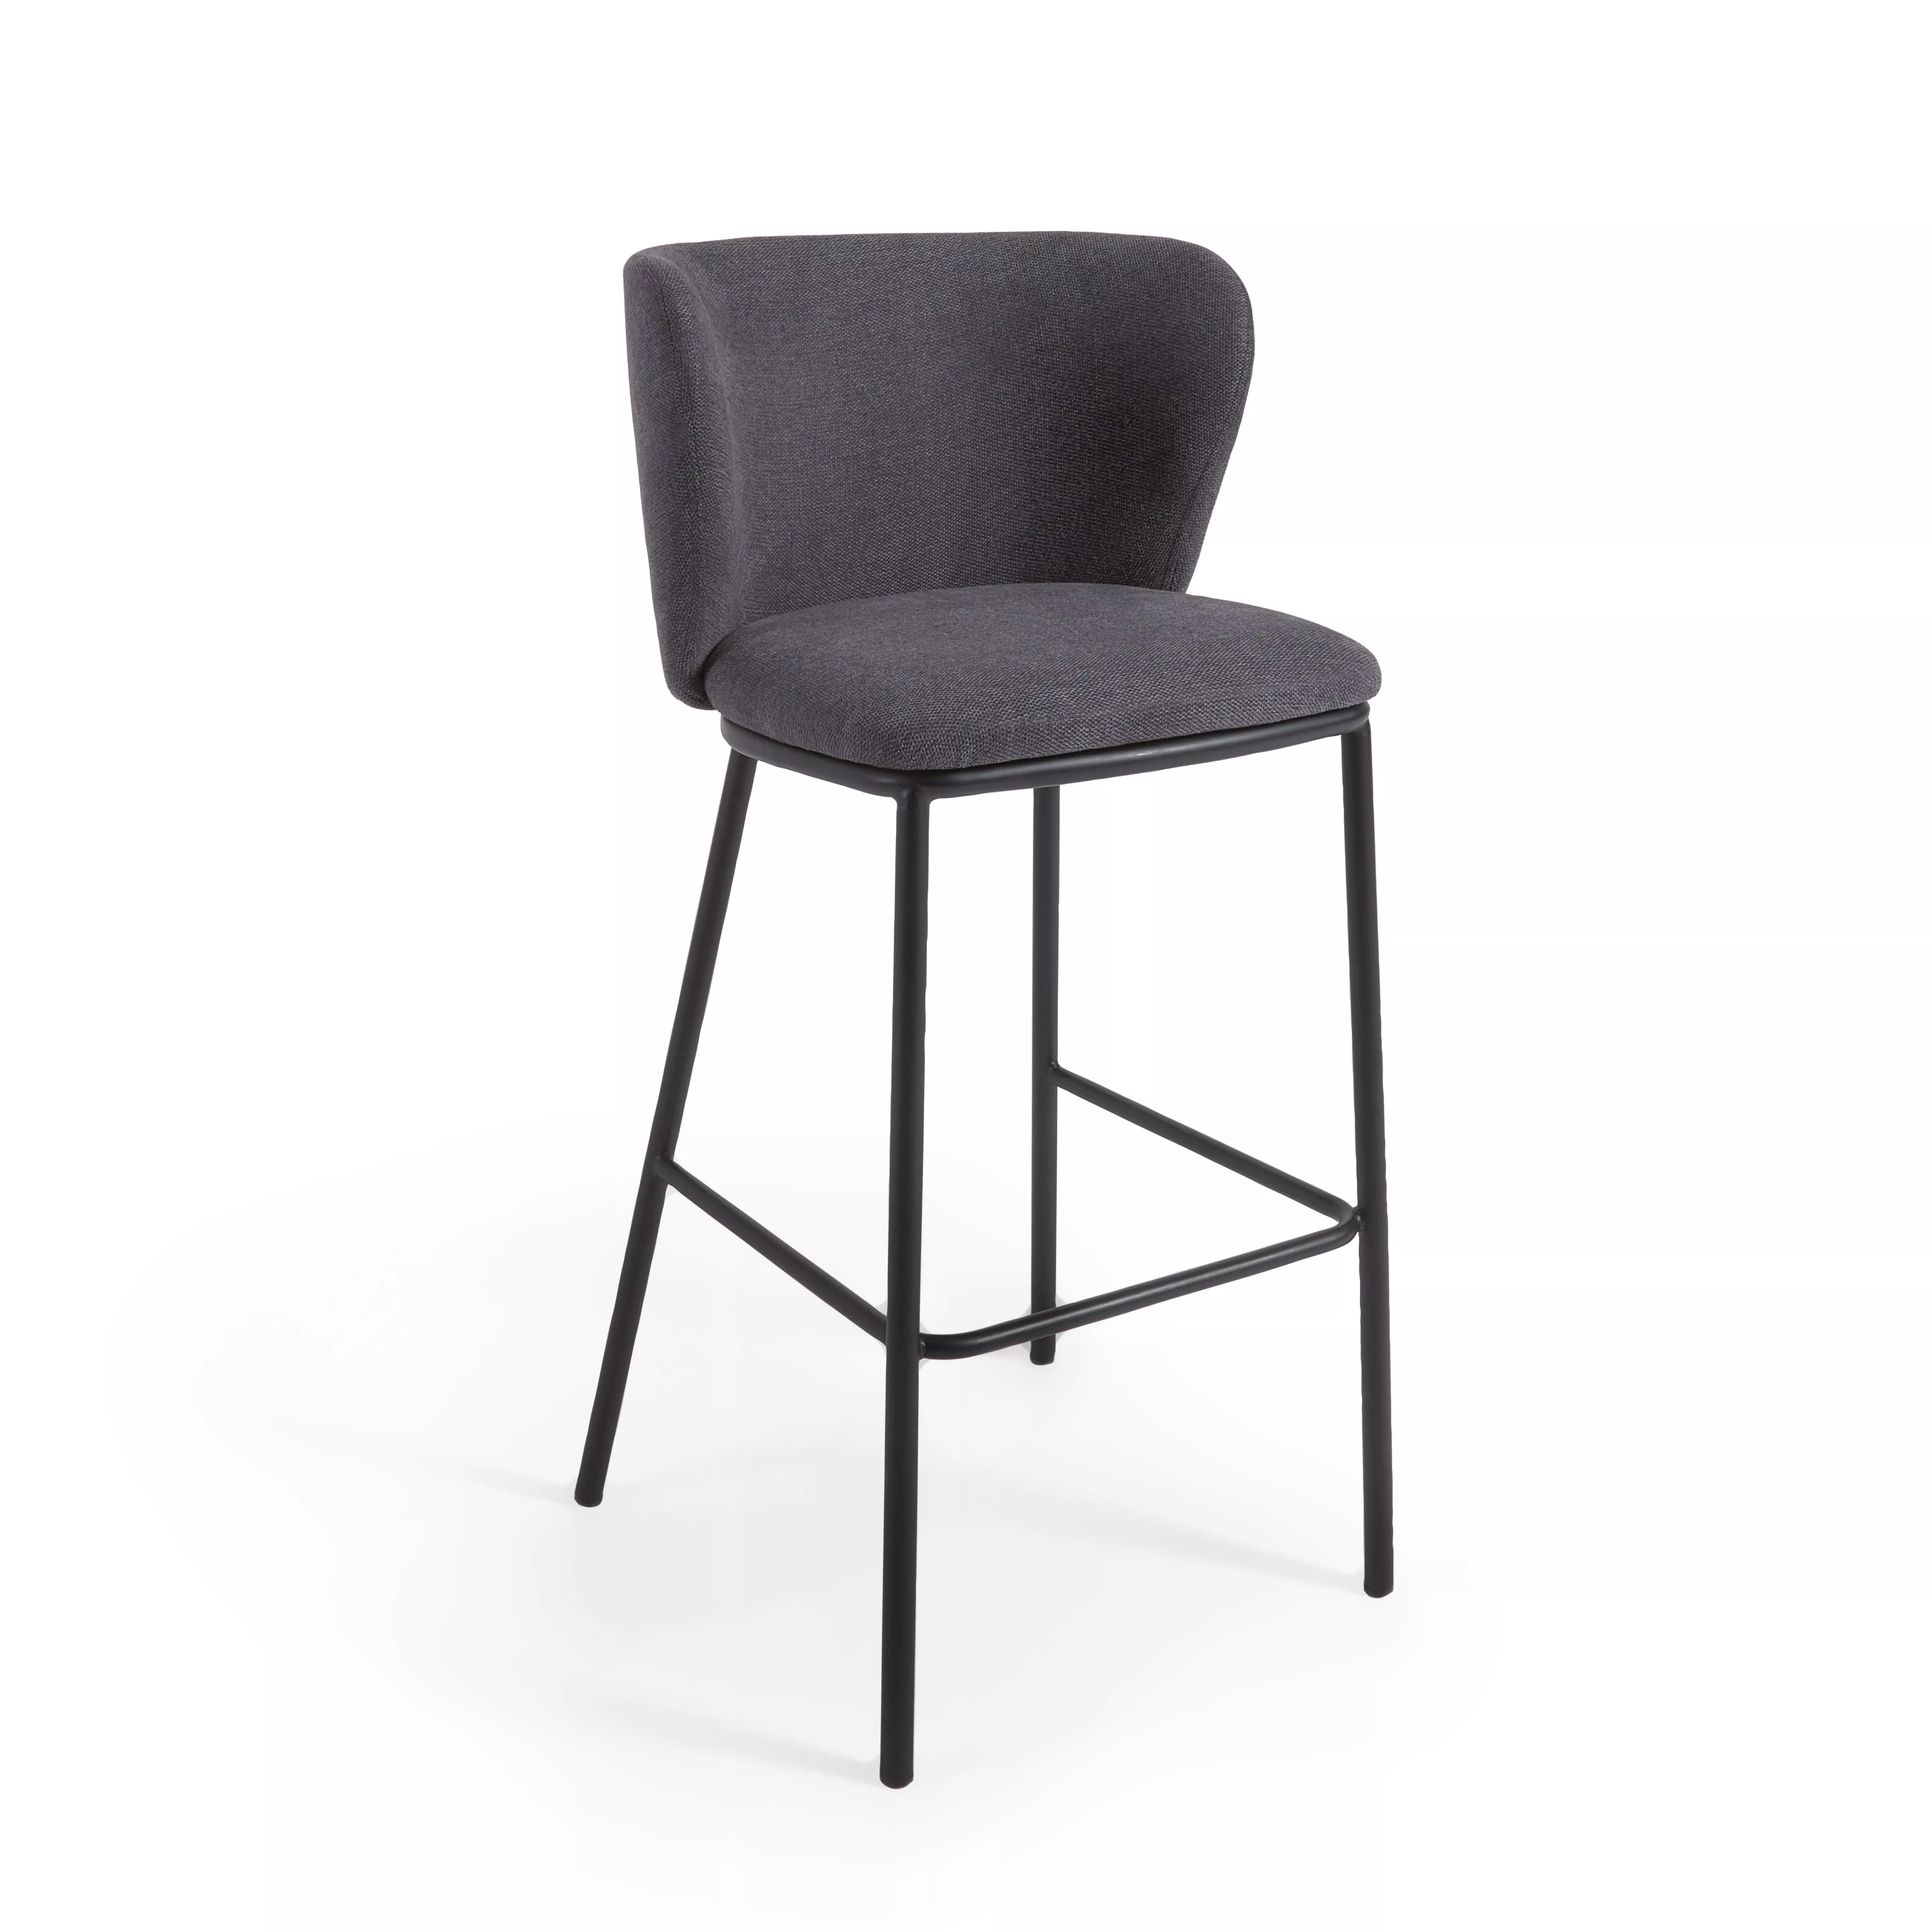 Барный стул La Forma Ciselia из темно-серой синели и черной стали 75 см